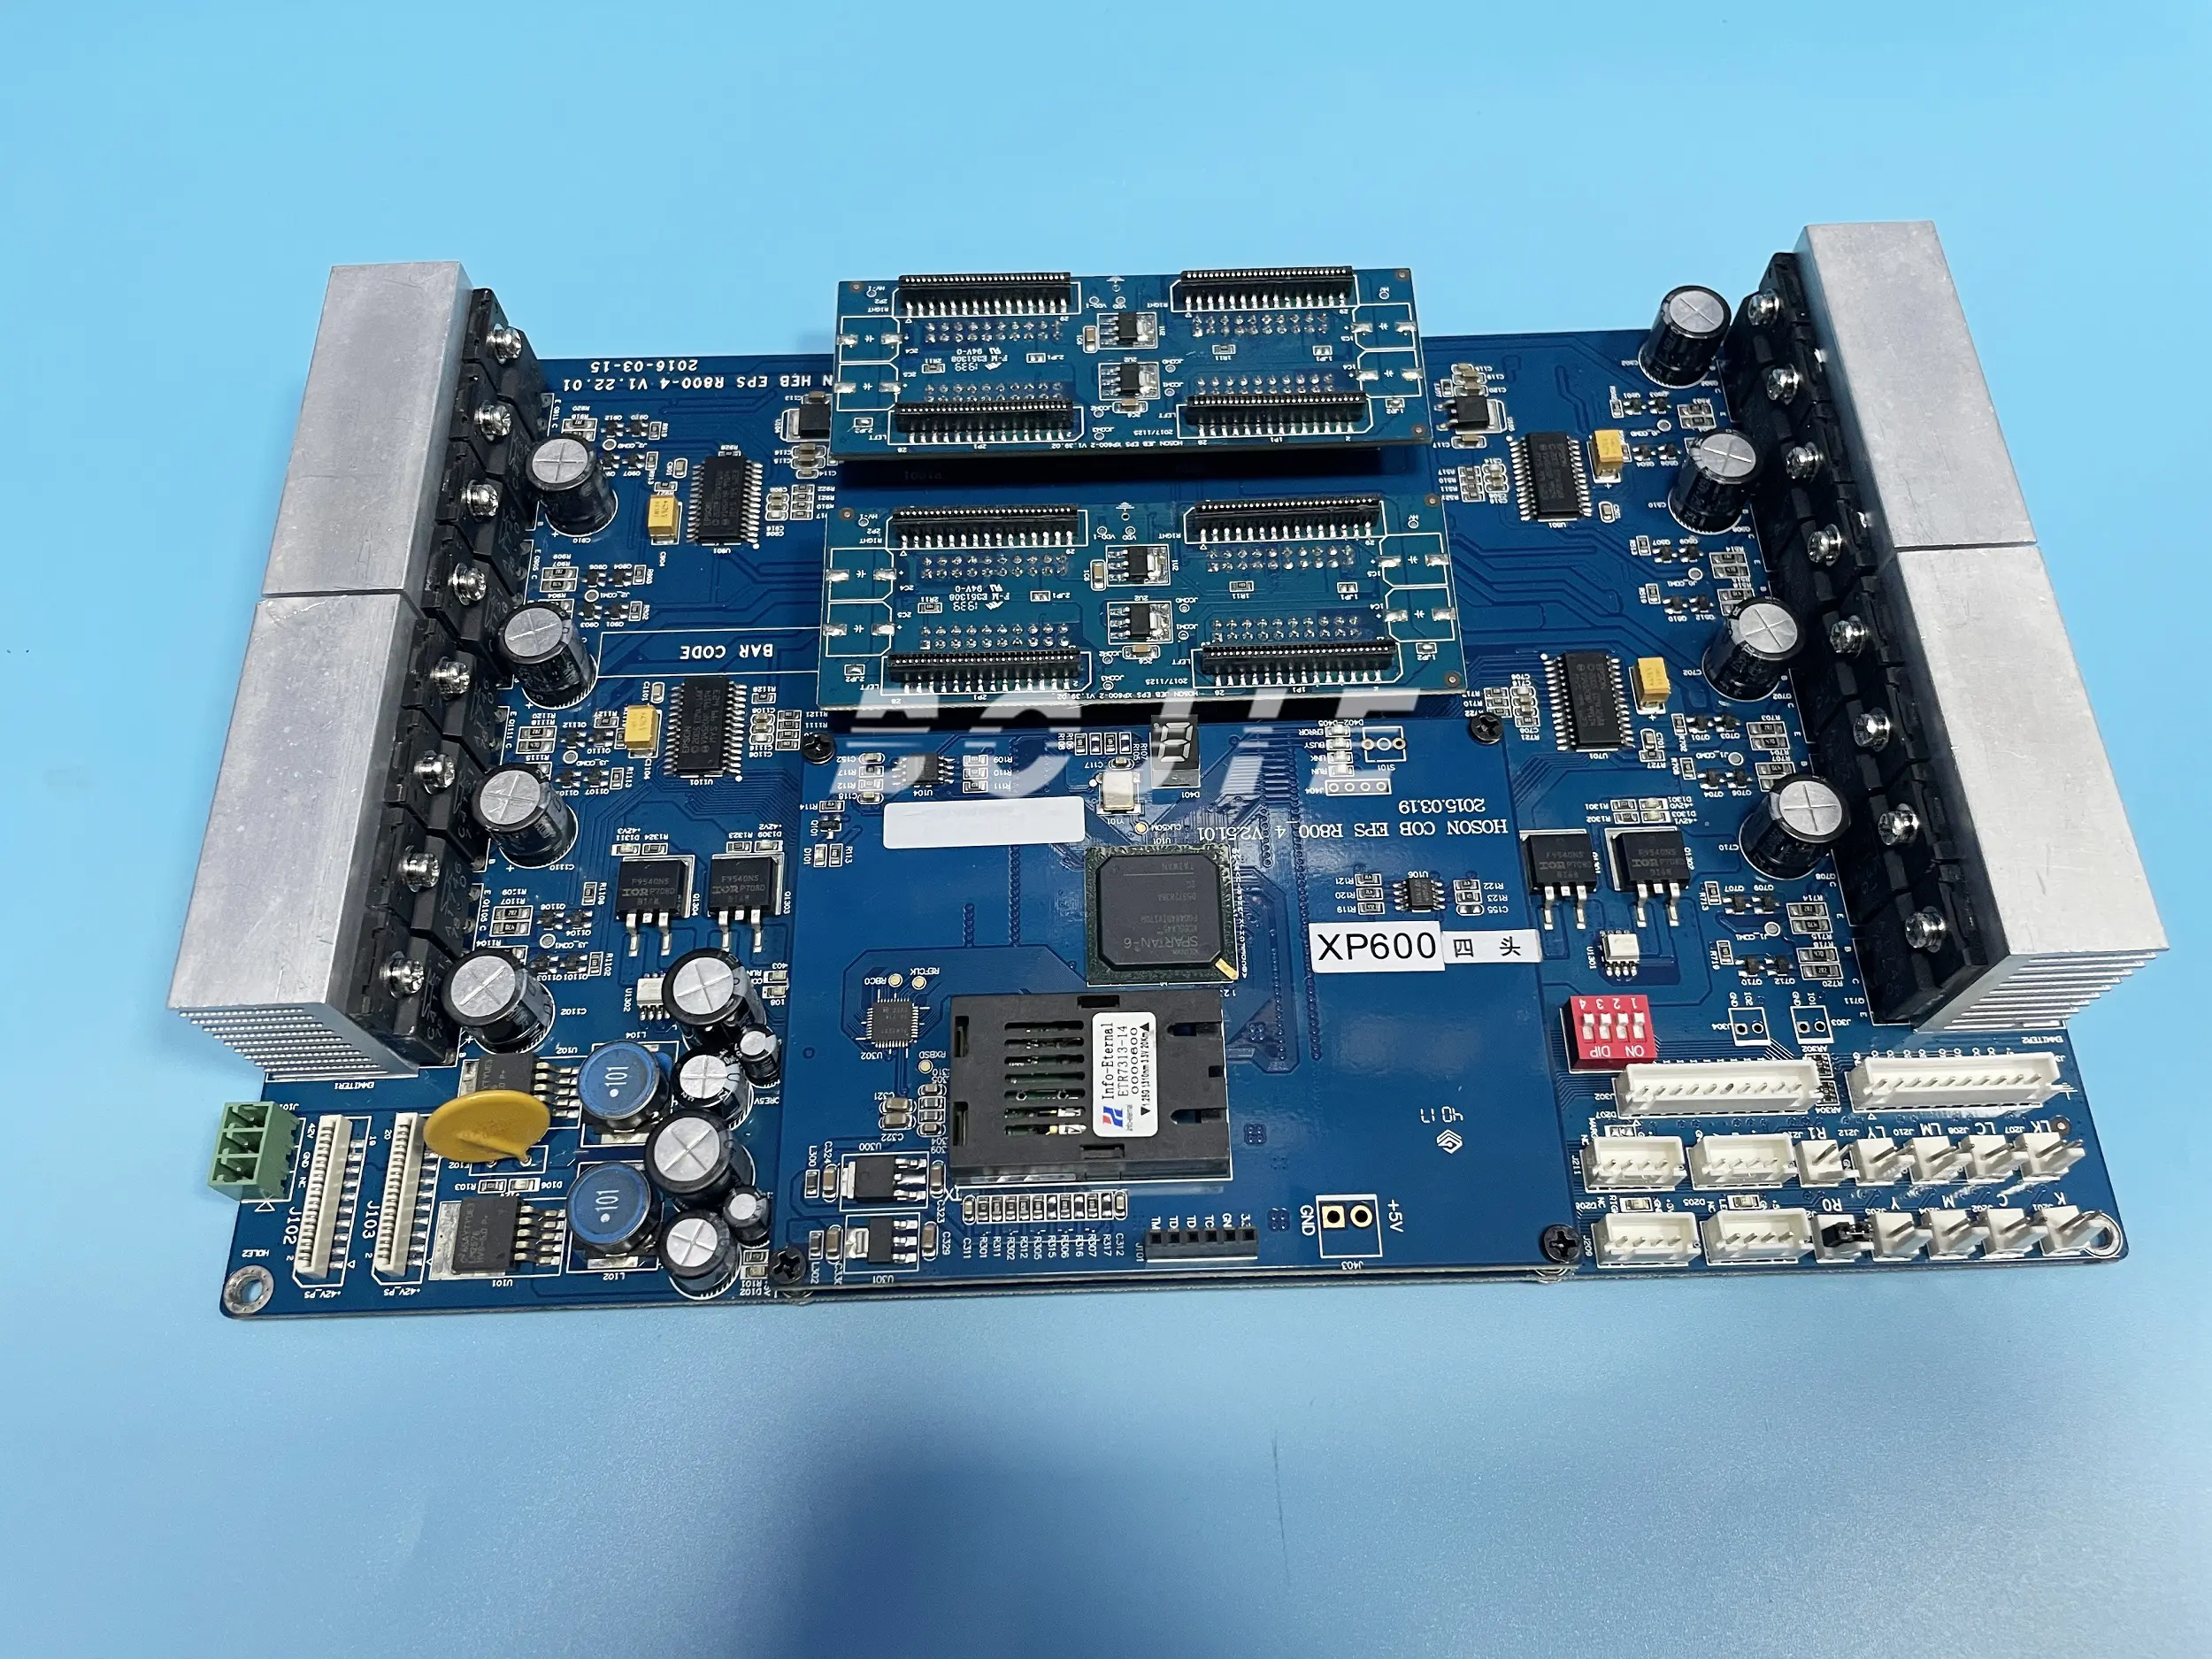 100% yeni Zhongye/Allwin parçaları için epson xp600 4H hoson kafa taşıma kurulu mavi V.22 USB iyi fiyat ile adaptör panosu içerir